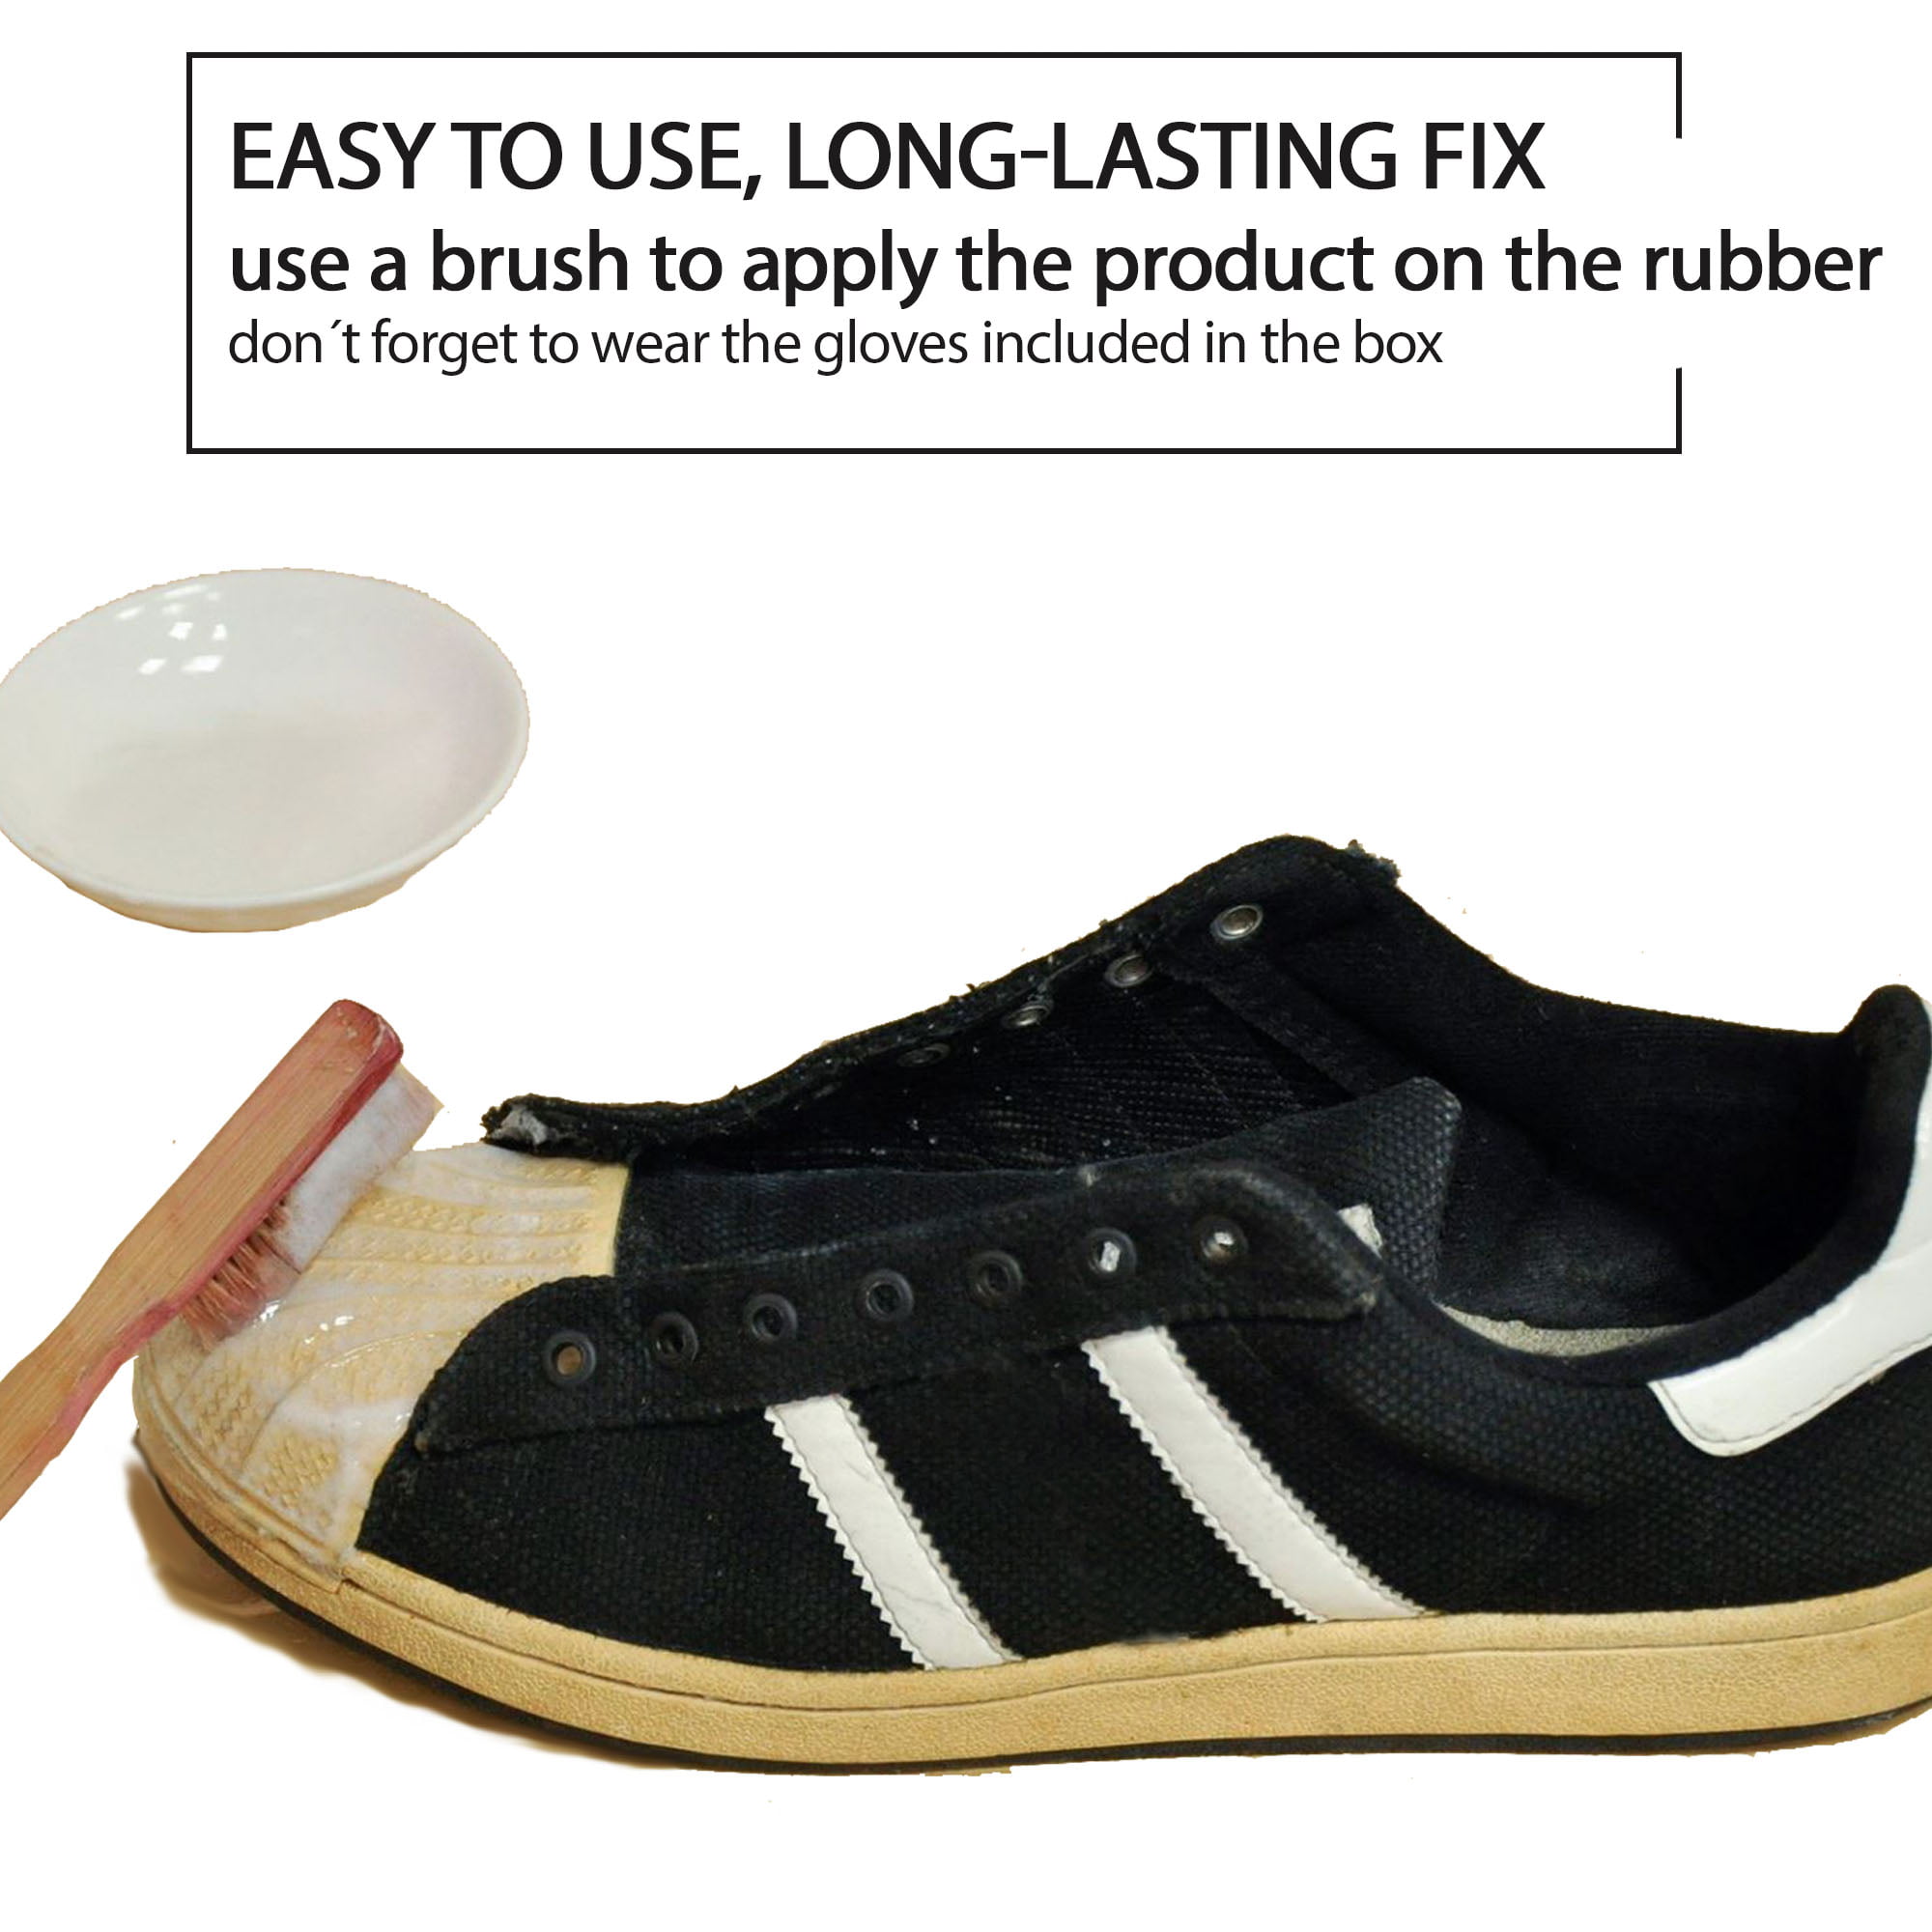 Beruhigungsmittel registrieren analysieren sneaker sole restorer ...